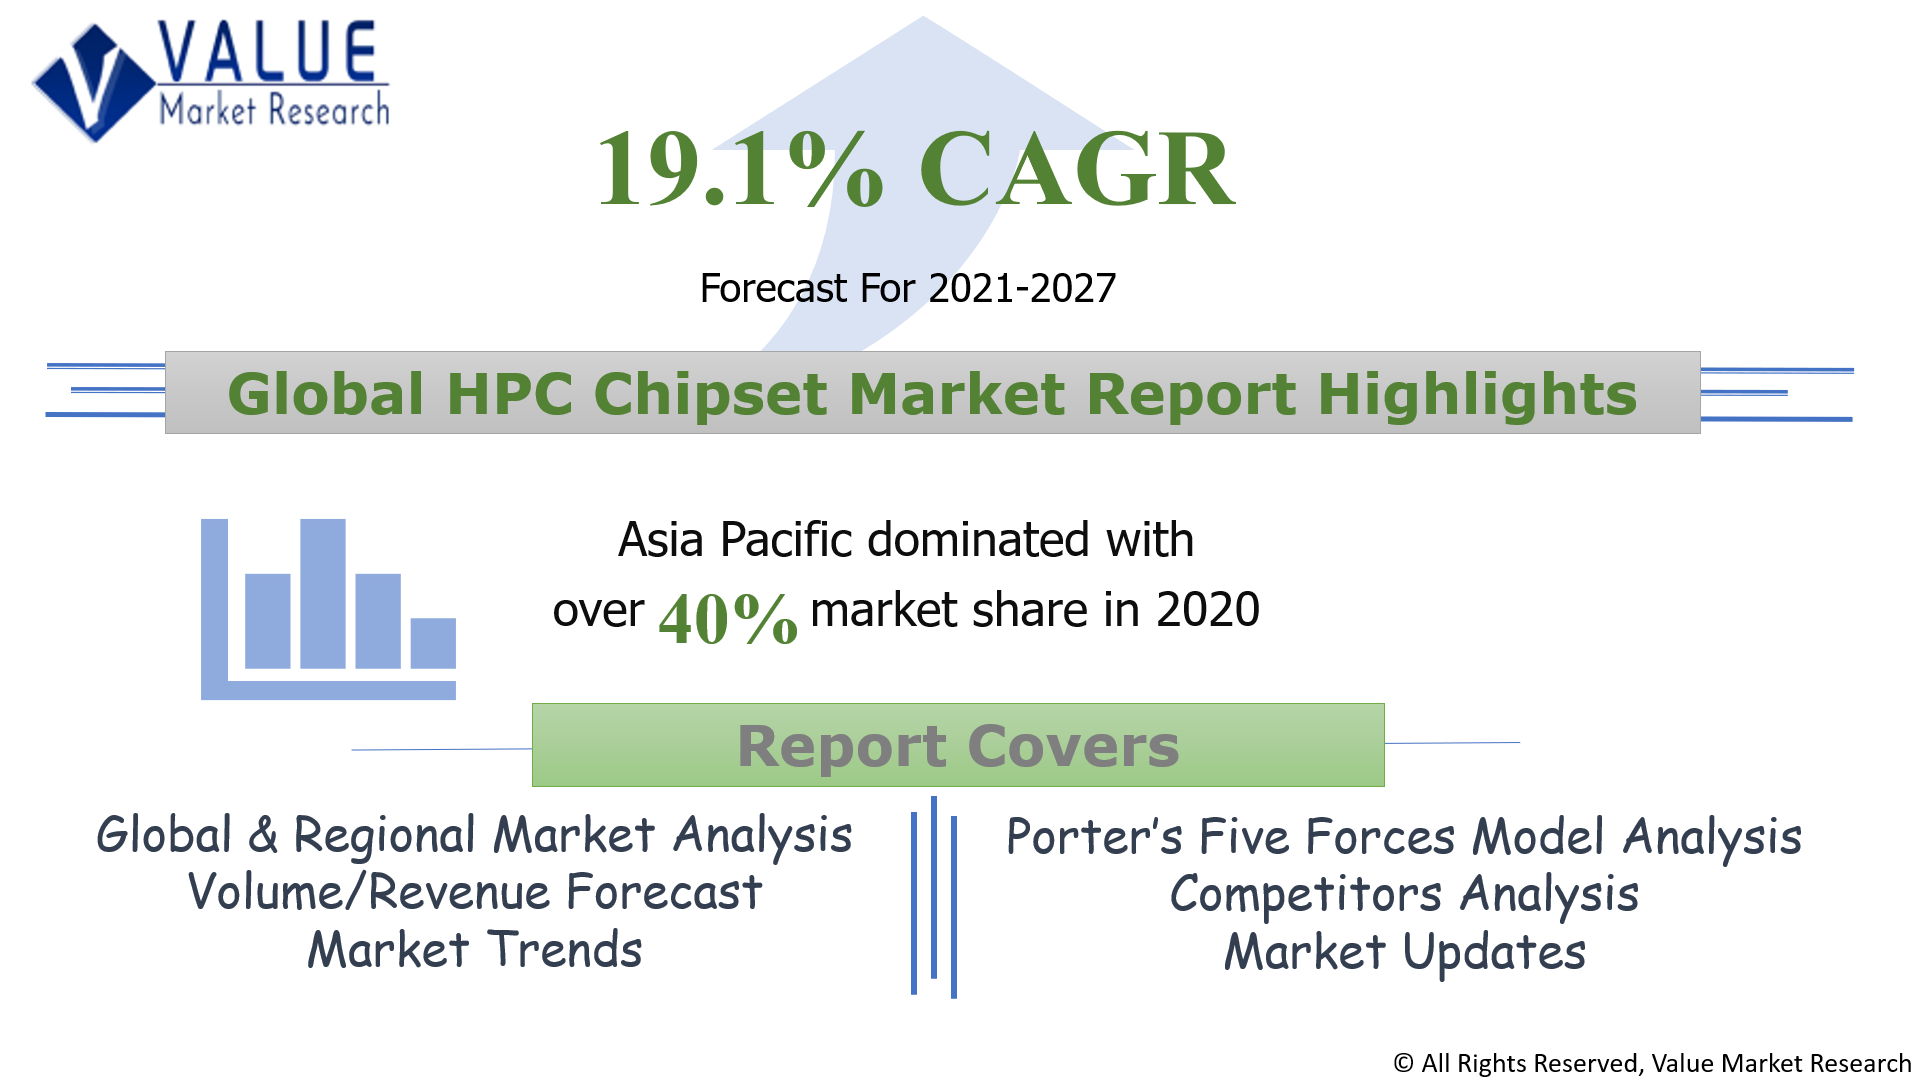 Global HPC Chipset Market Share